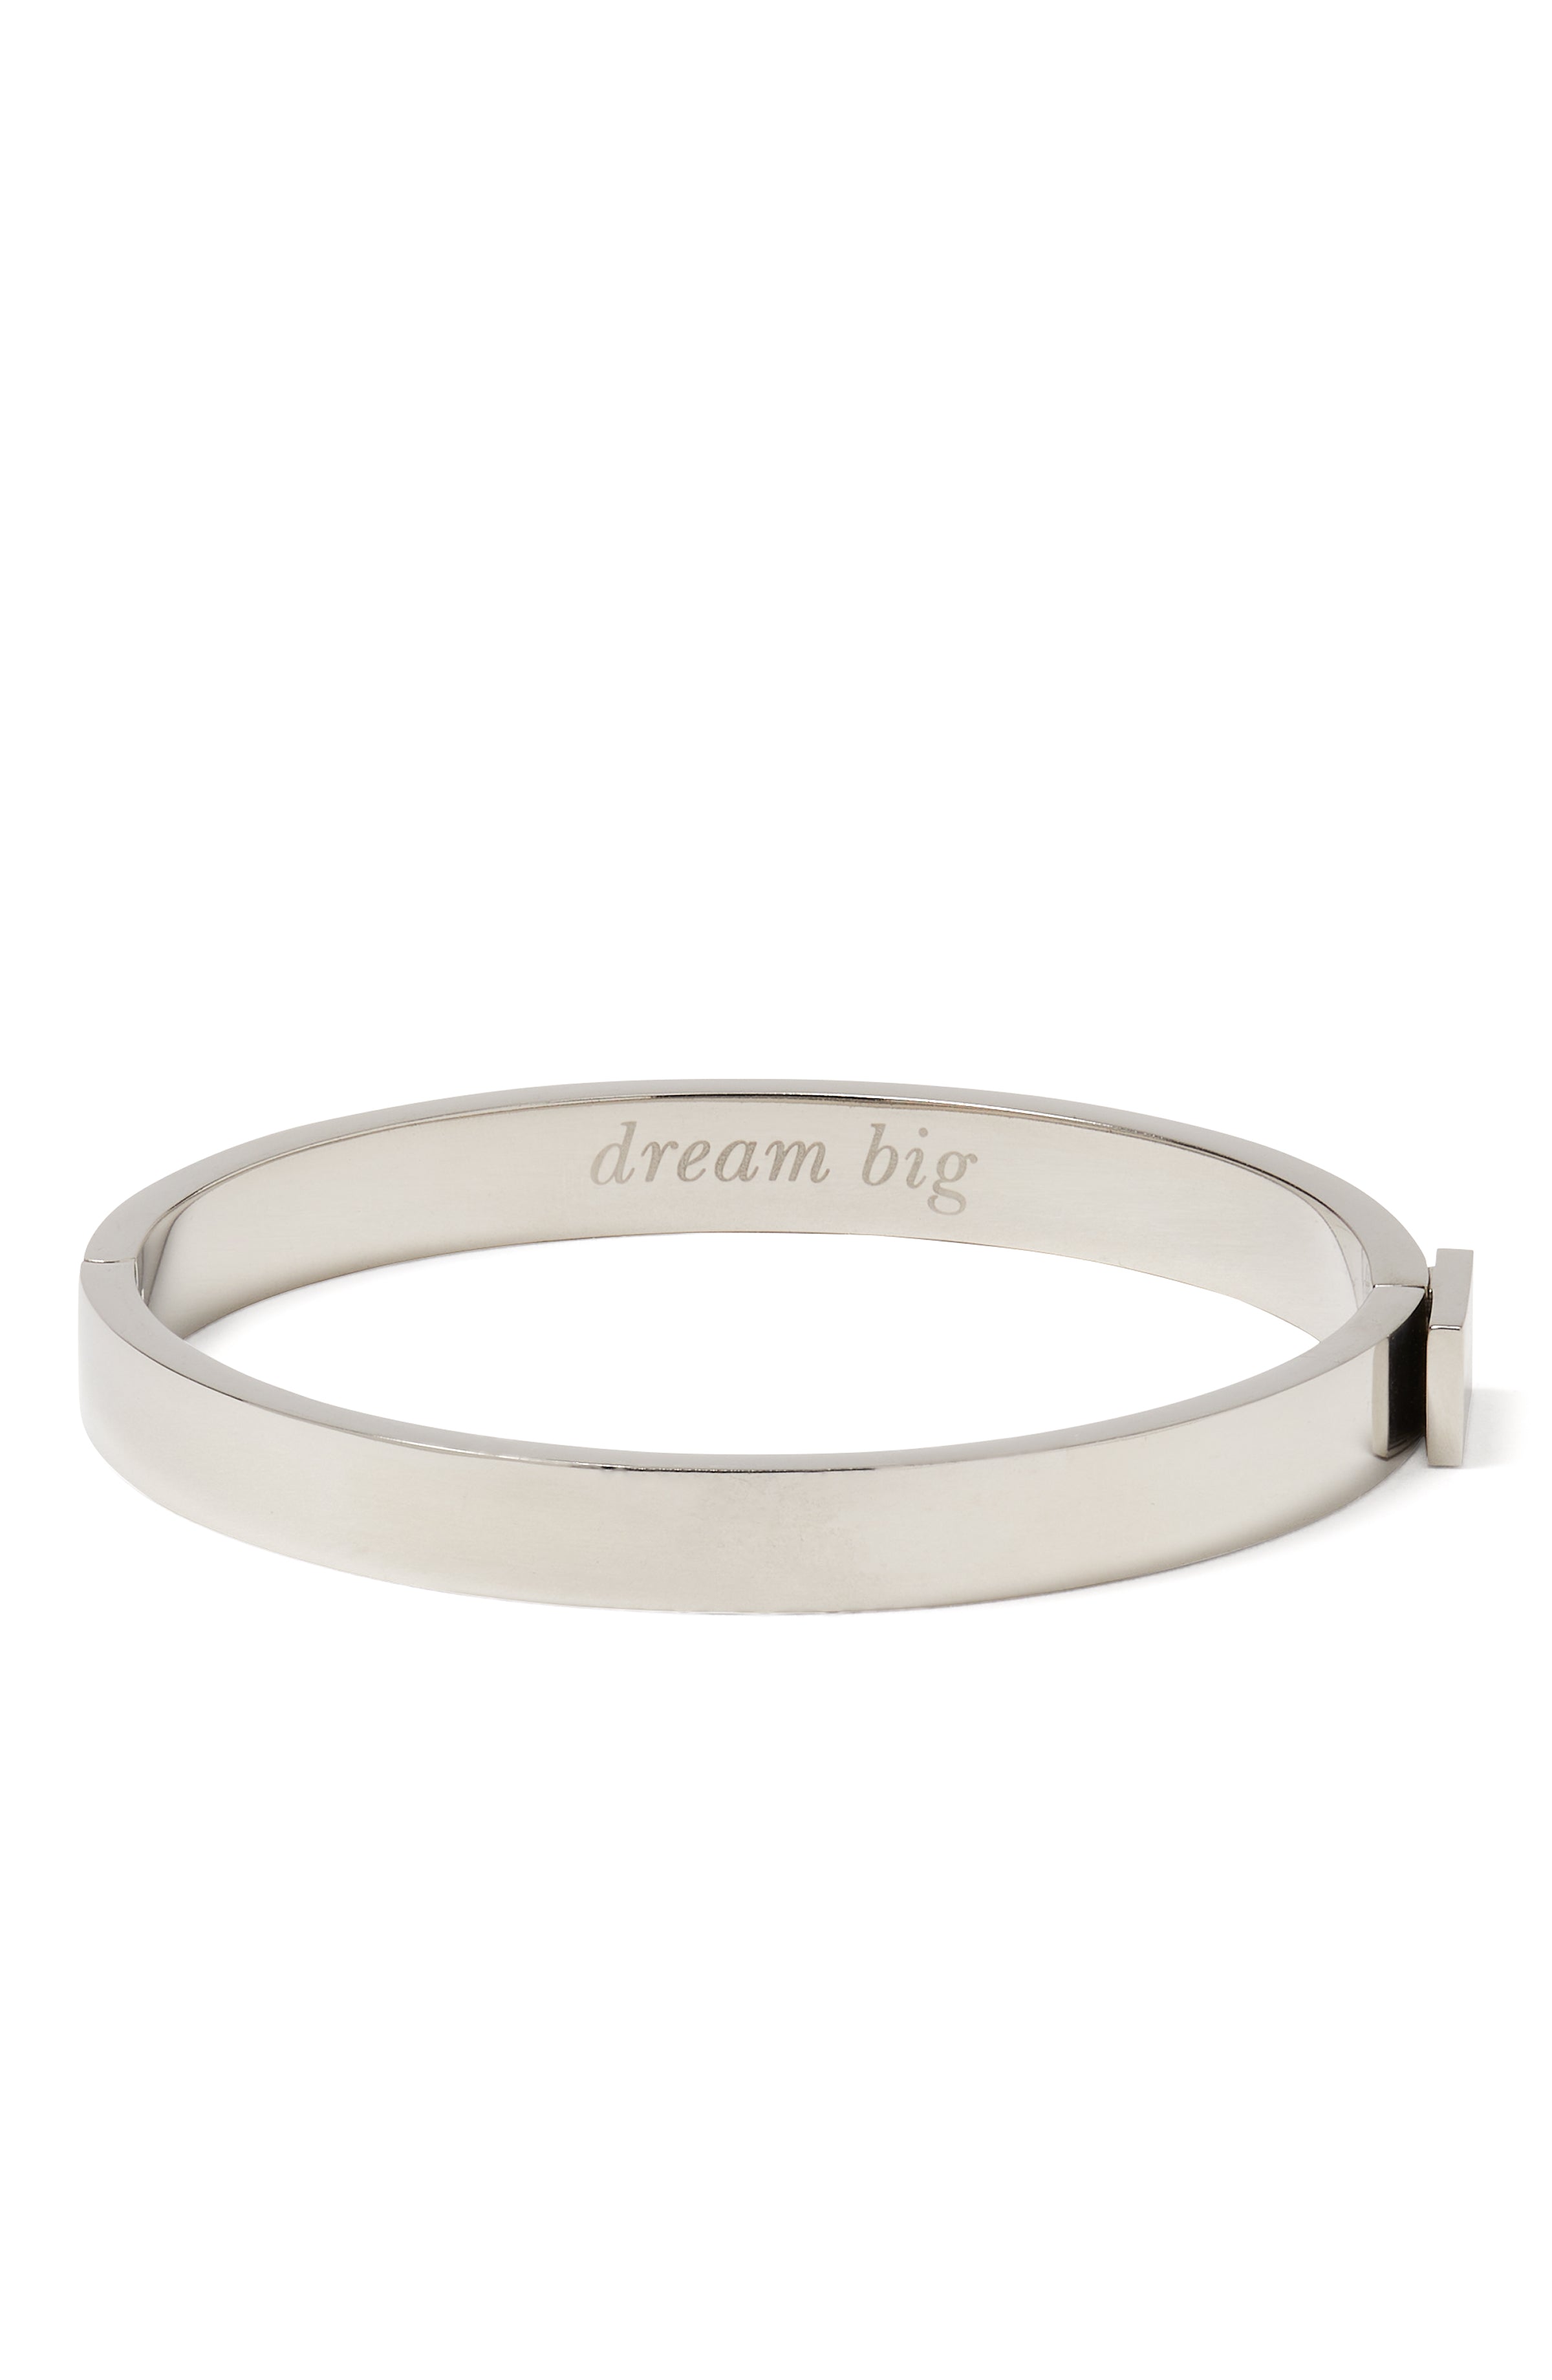 KD339-dream big idiom bangle-Silver